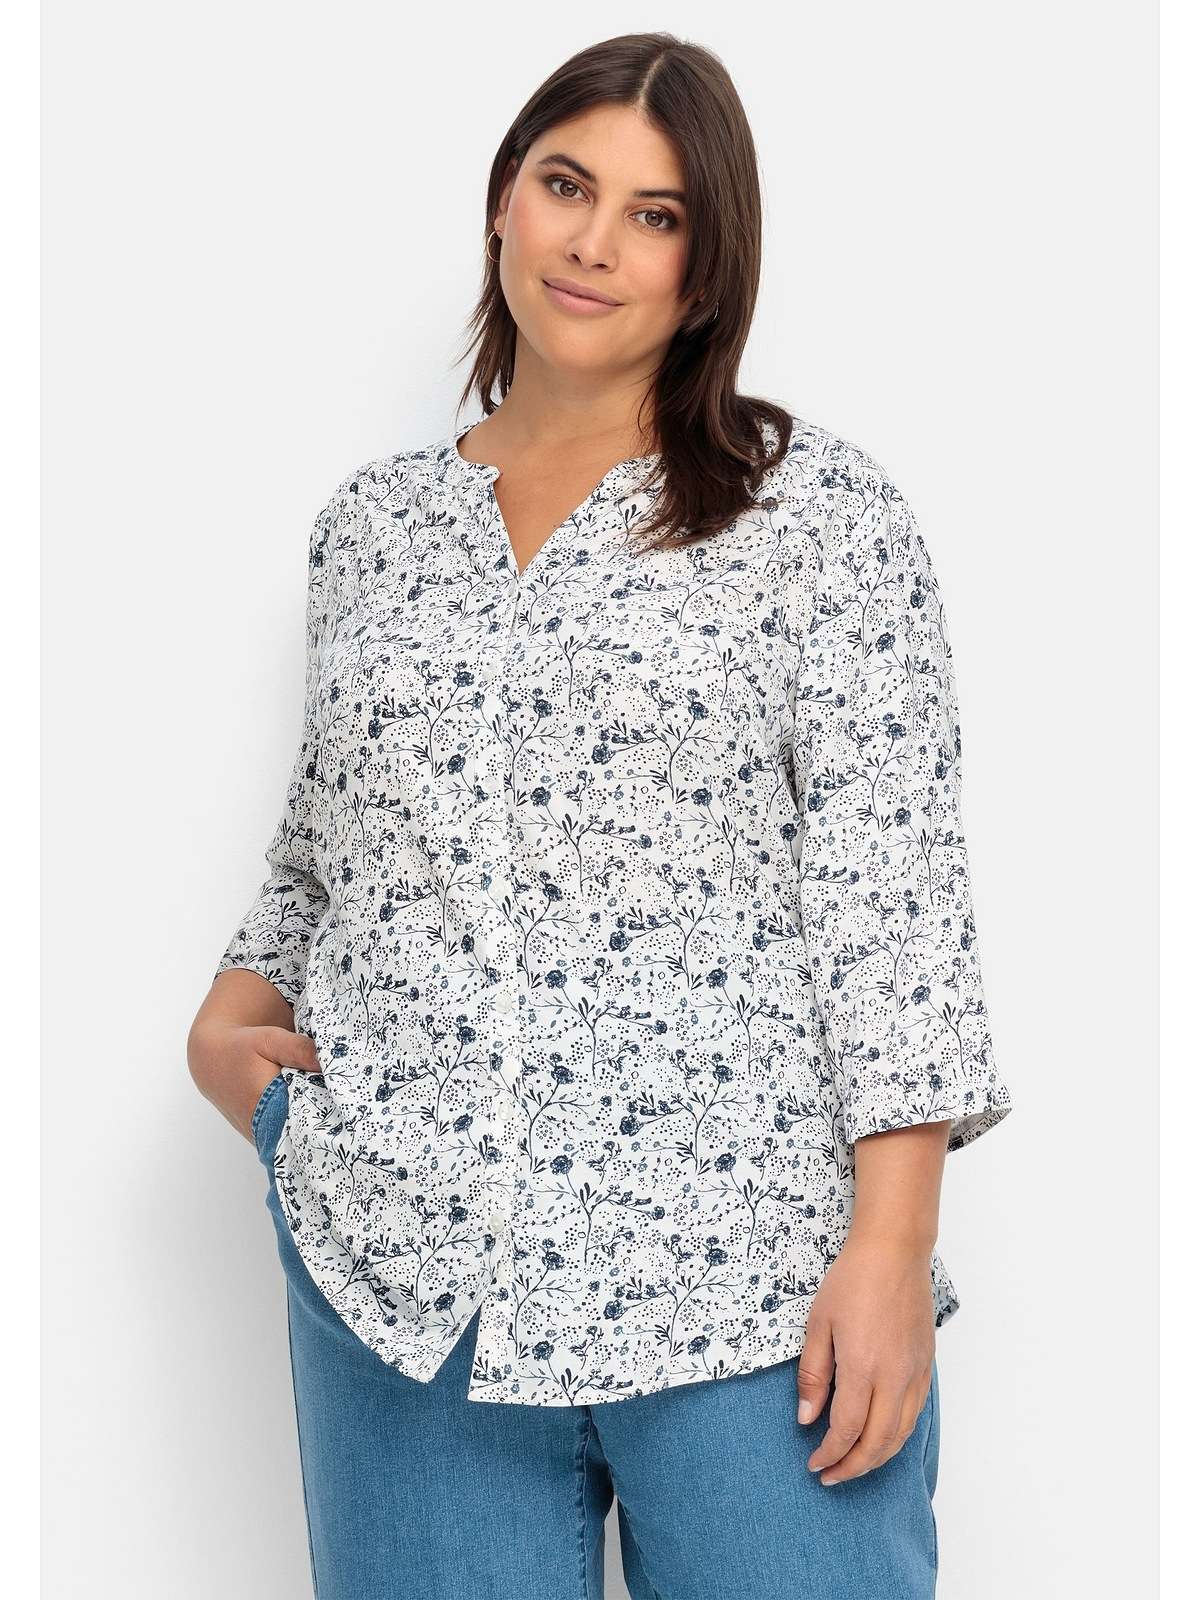 Блузка-рубашка с цветочным принтом, слегка прозрачная